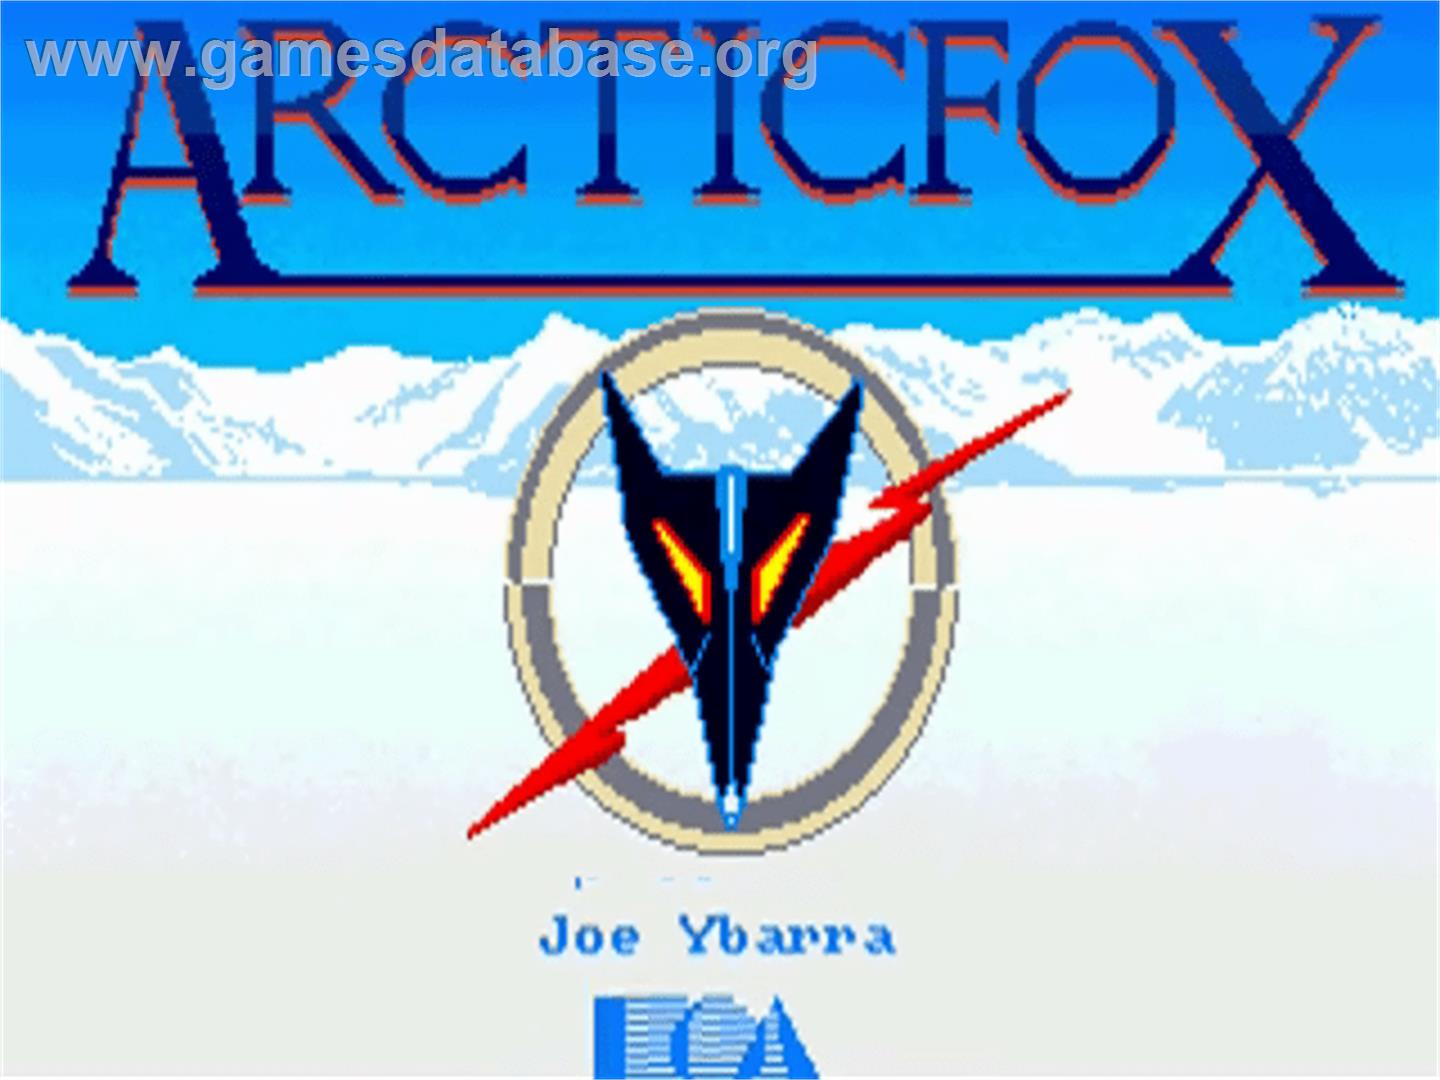 Arcticfox - Commodore Amiga - Artwork - Title Screen